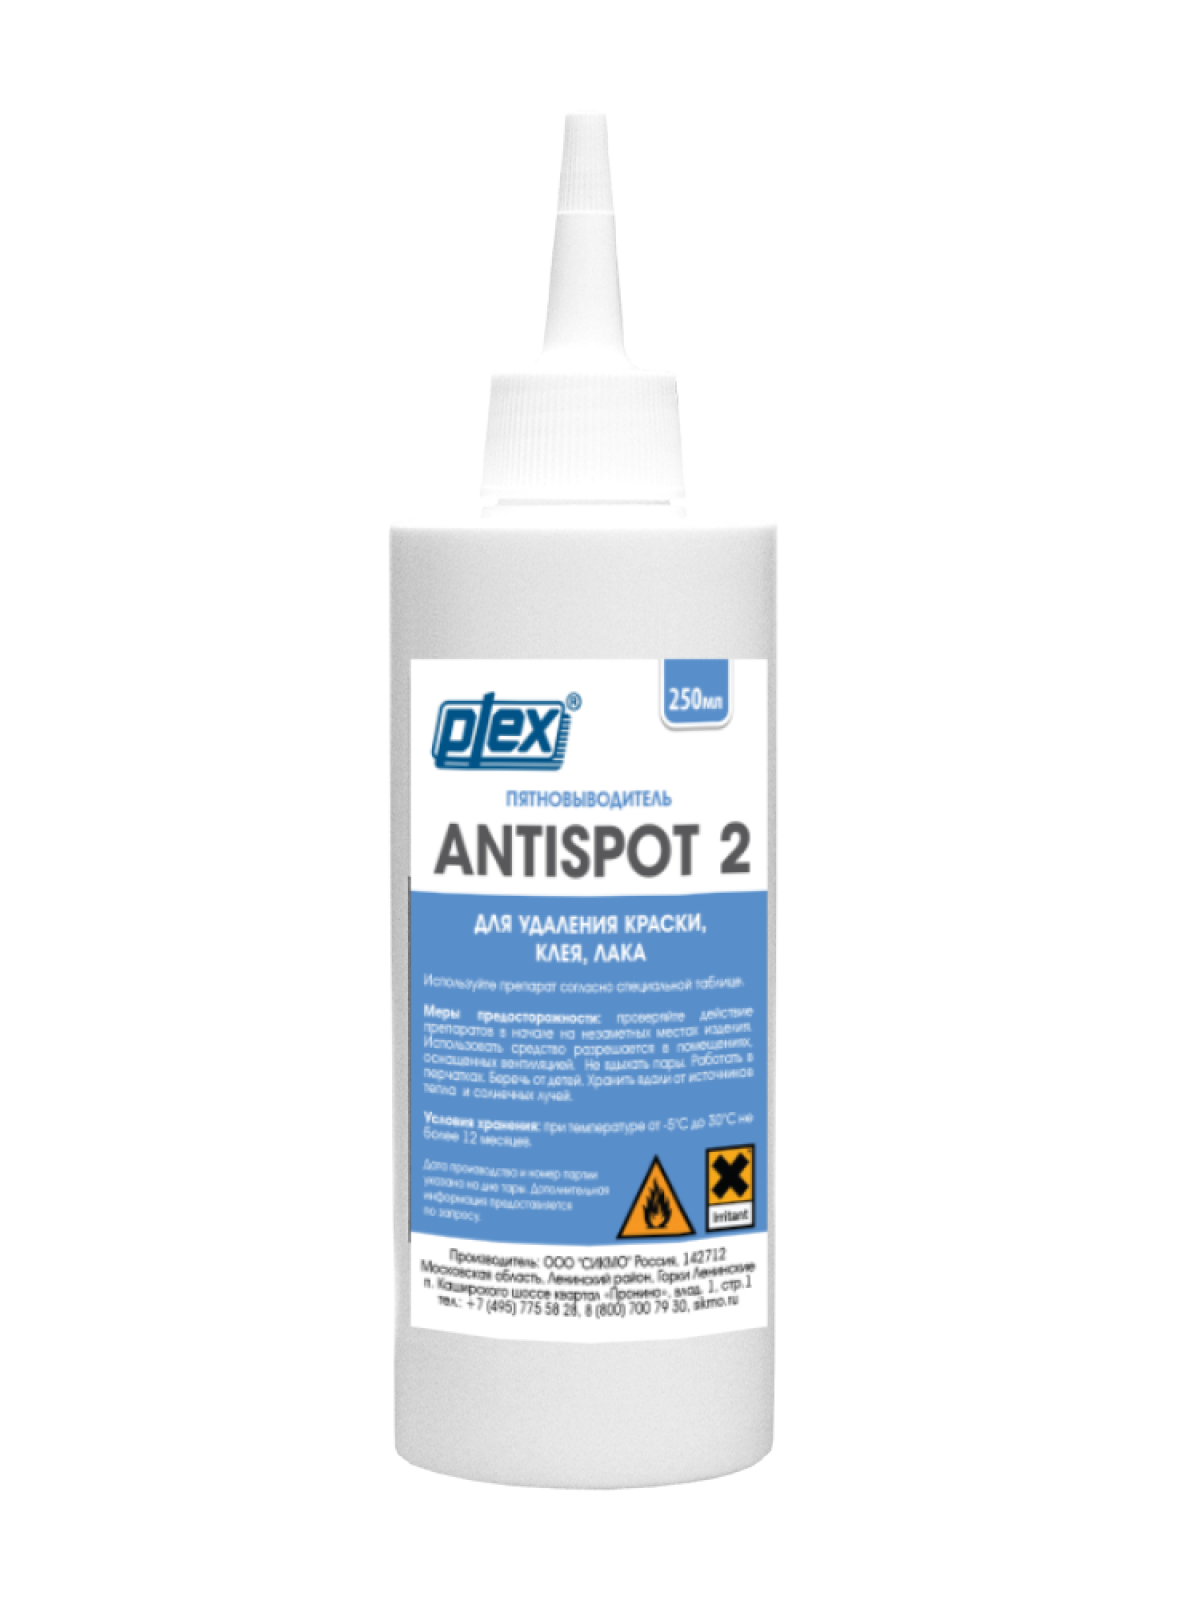 0823 ANTISPOT 2 (1л) Пятновыводитель для удаления краски, клея, лака